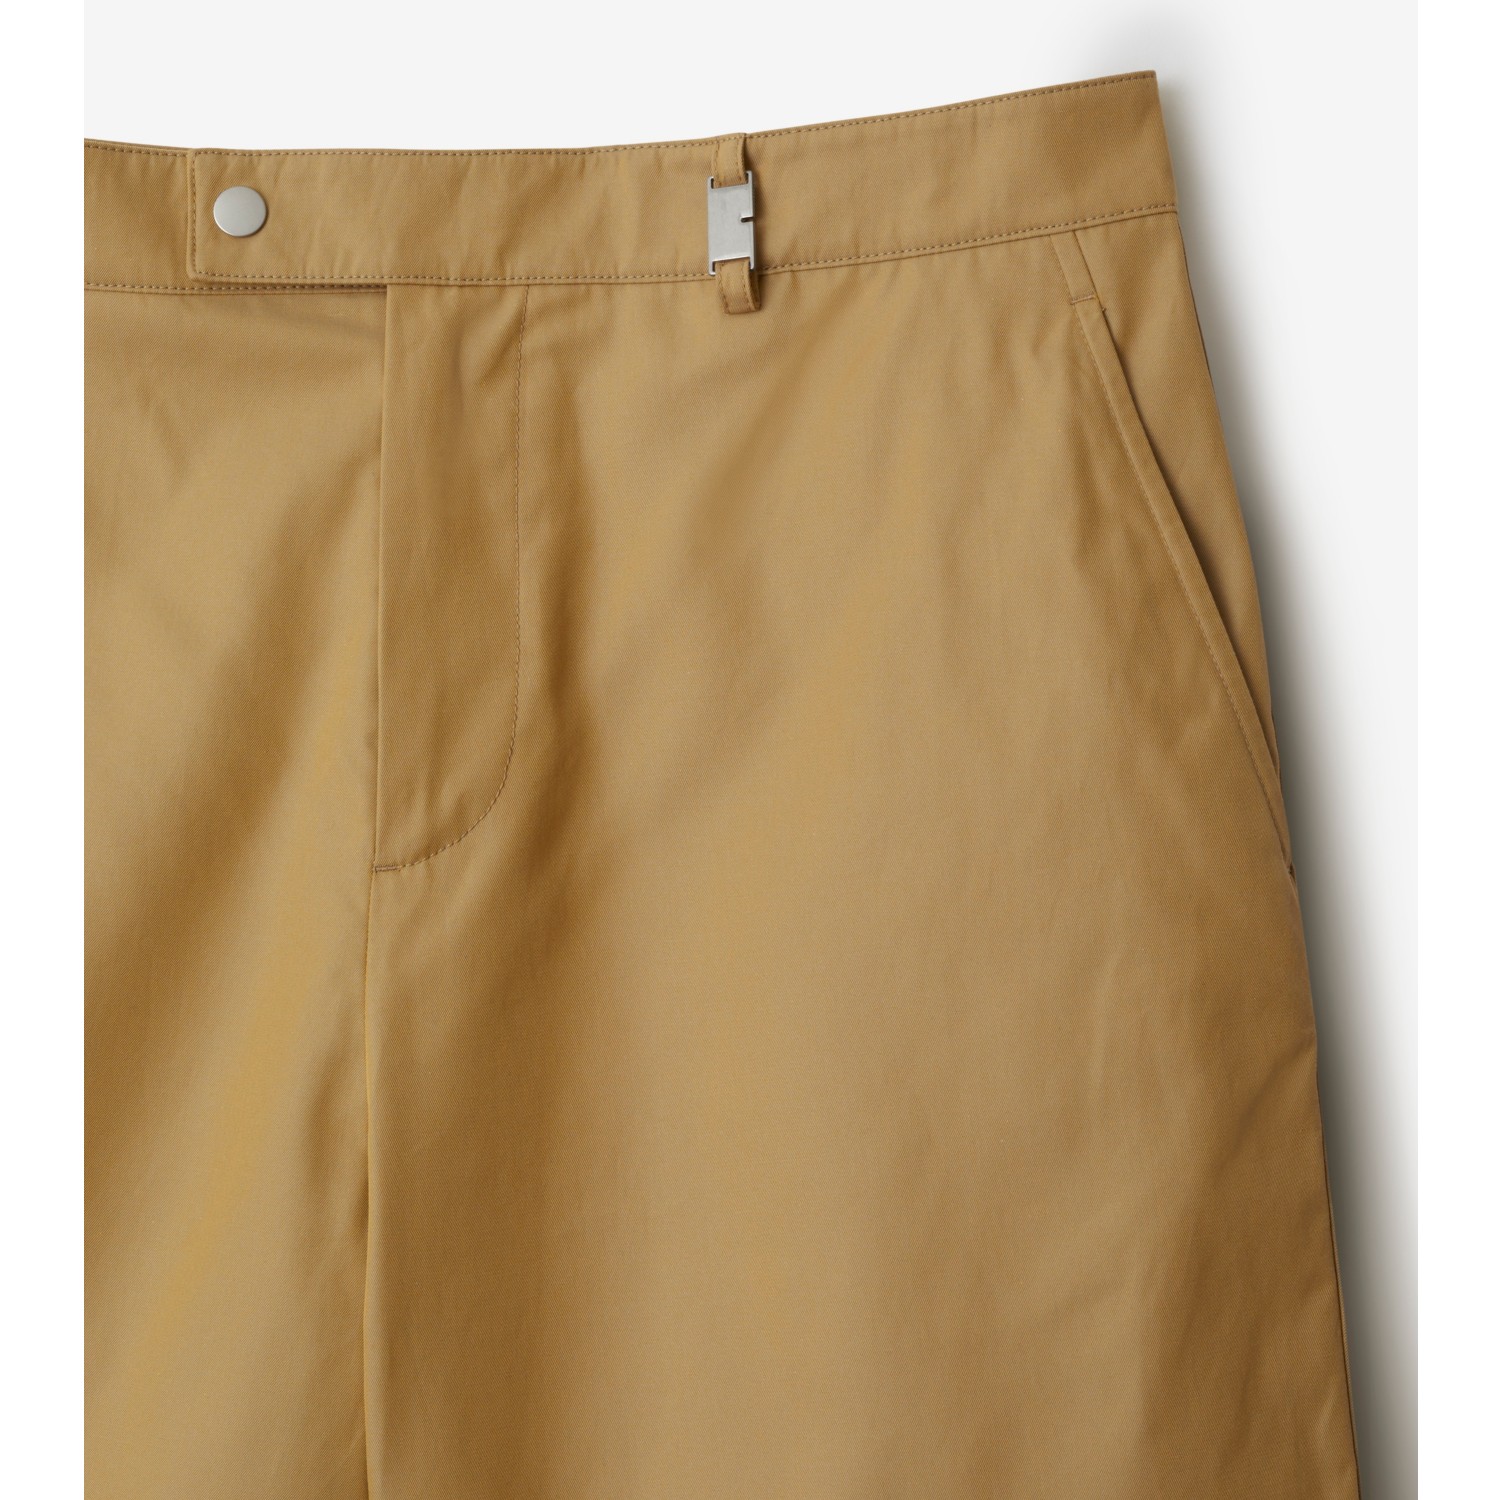 Pantalones chinos cortos en algodón